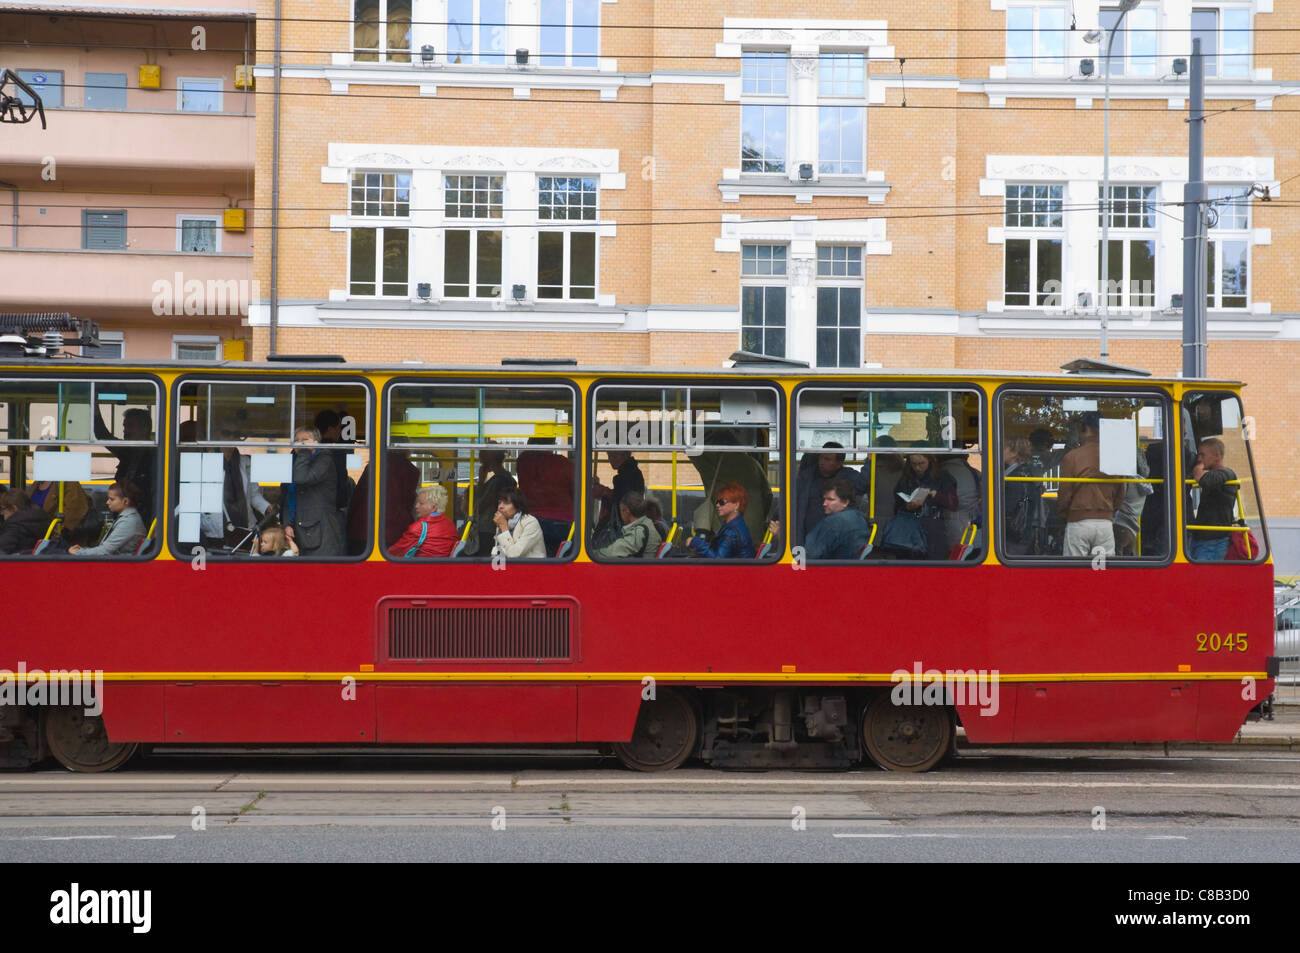 Tram in Praga district Warsaw Poland Europe Stock Photo